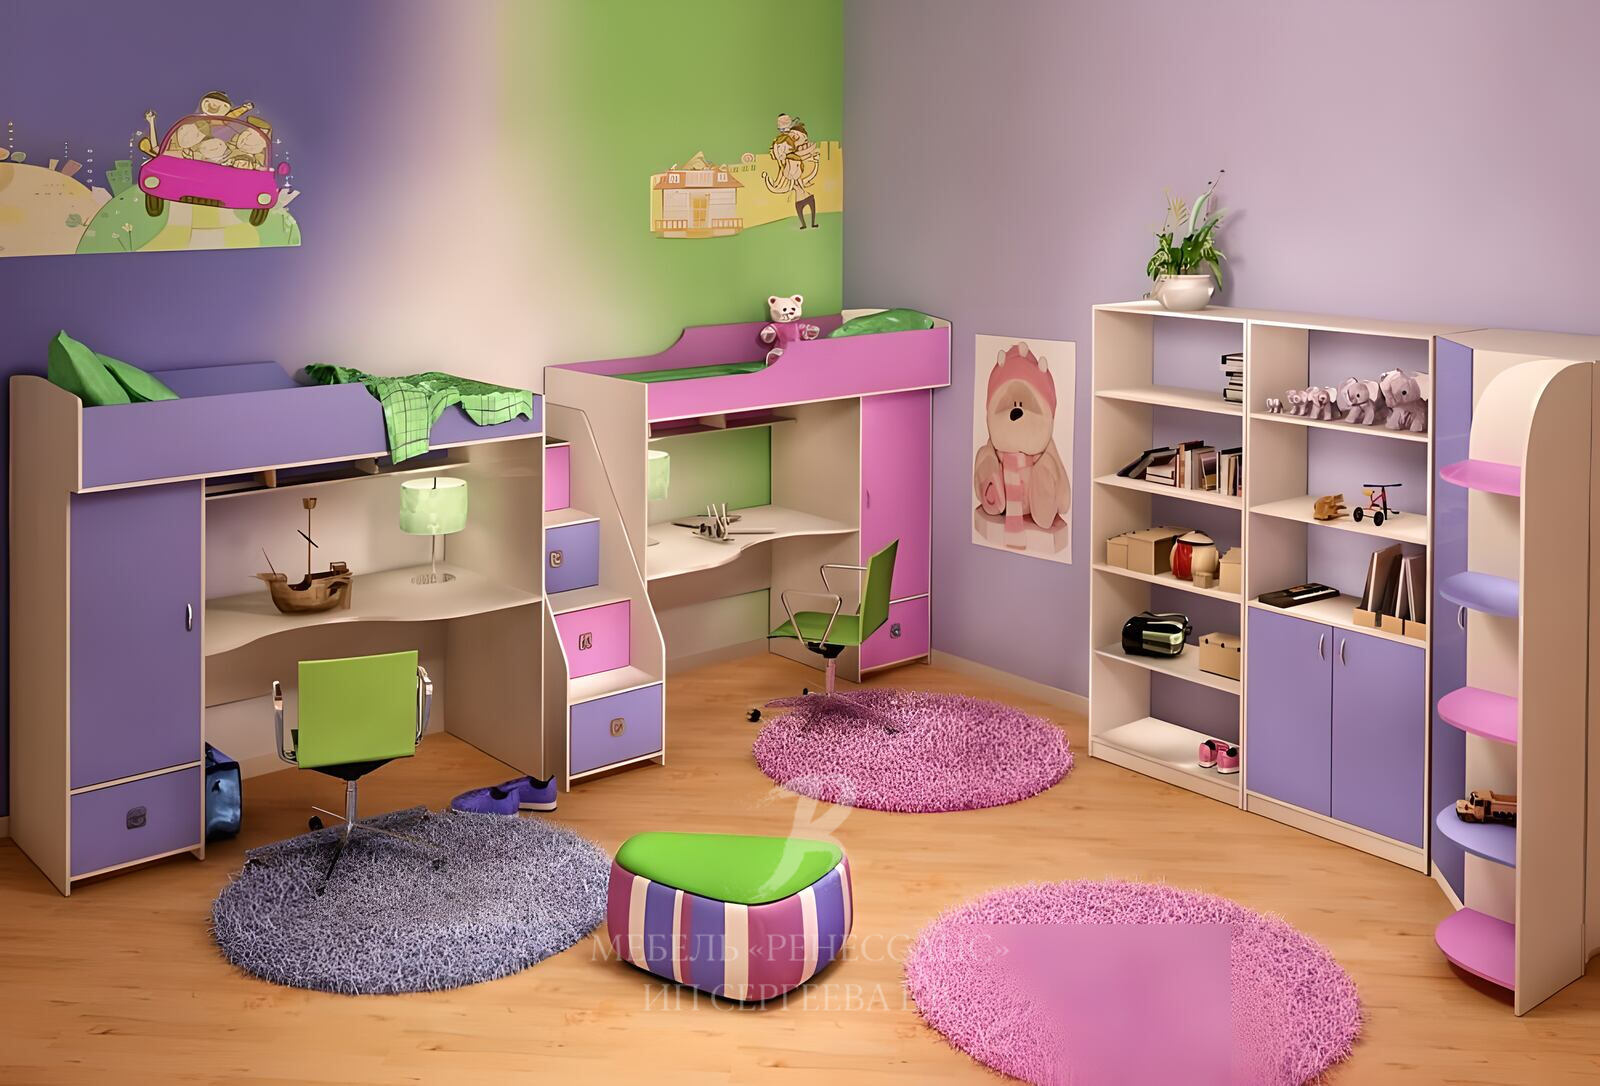 Что можно купить в комнату. Мебель в детскую комнату для двоих детей. Мебель для детской комнаты девочке. Детские комнаты для девочек. Мебель для детской мальчик и девочка.